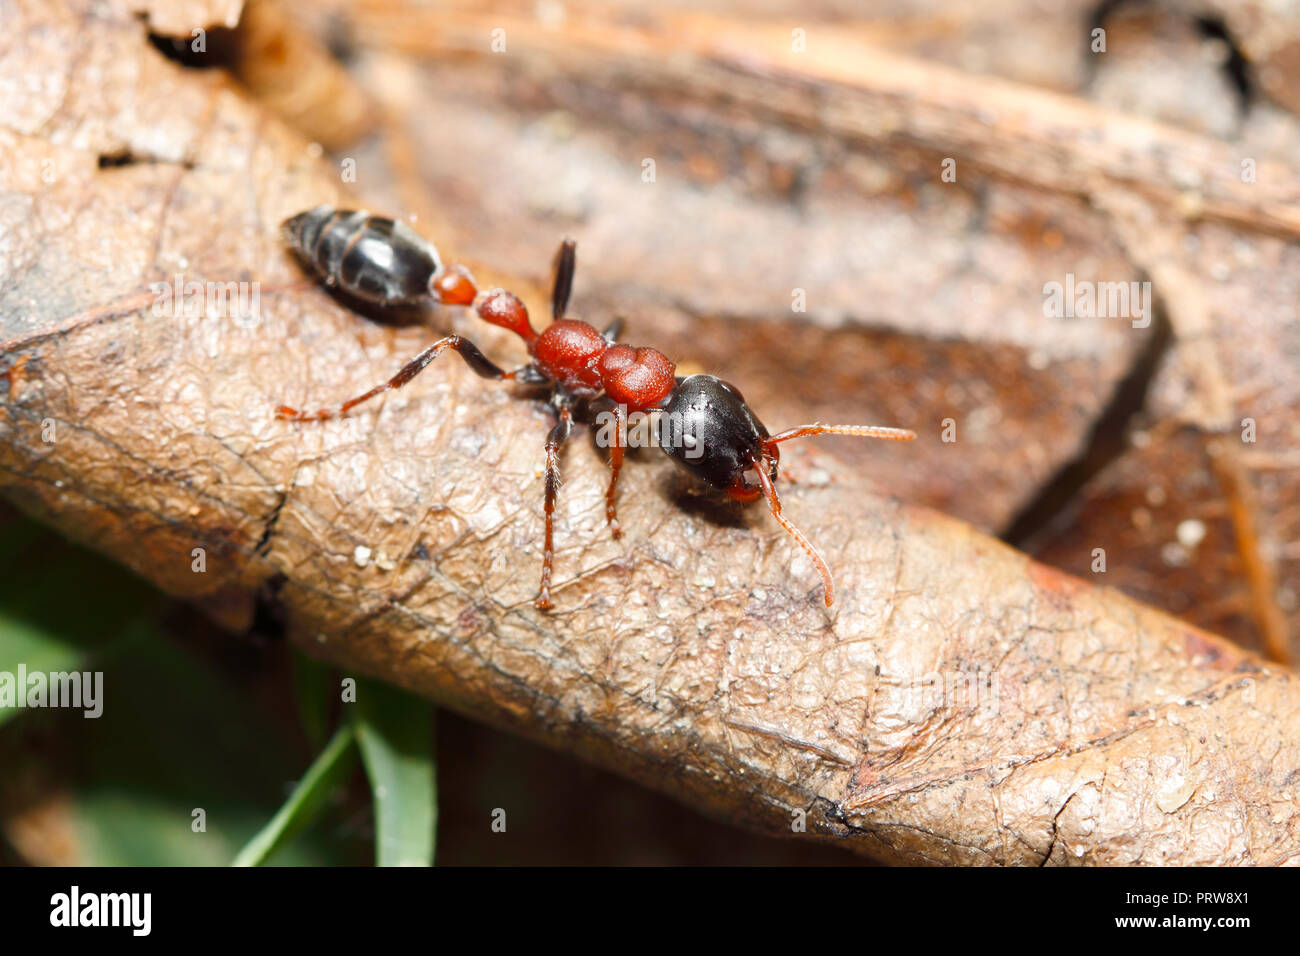 Zweifarbige arboreal Ant (Tetraponera rufonigra): Ameise, schmerzhafte Stachel allergische Reaktionen und tot in Menschen durch anaphylaktischen Schock führen kann. Stockfoto